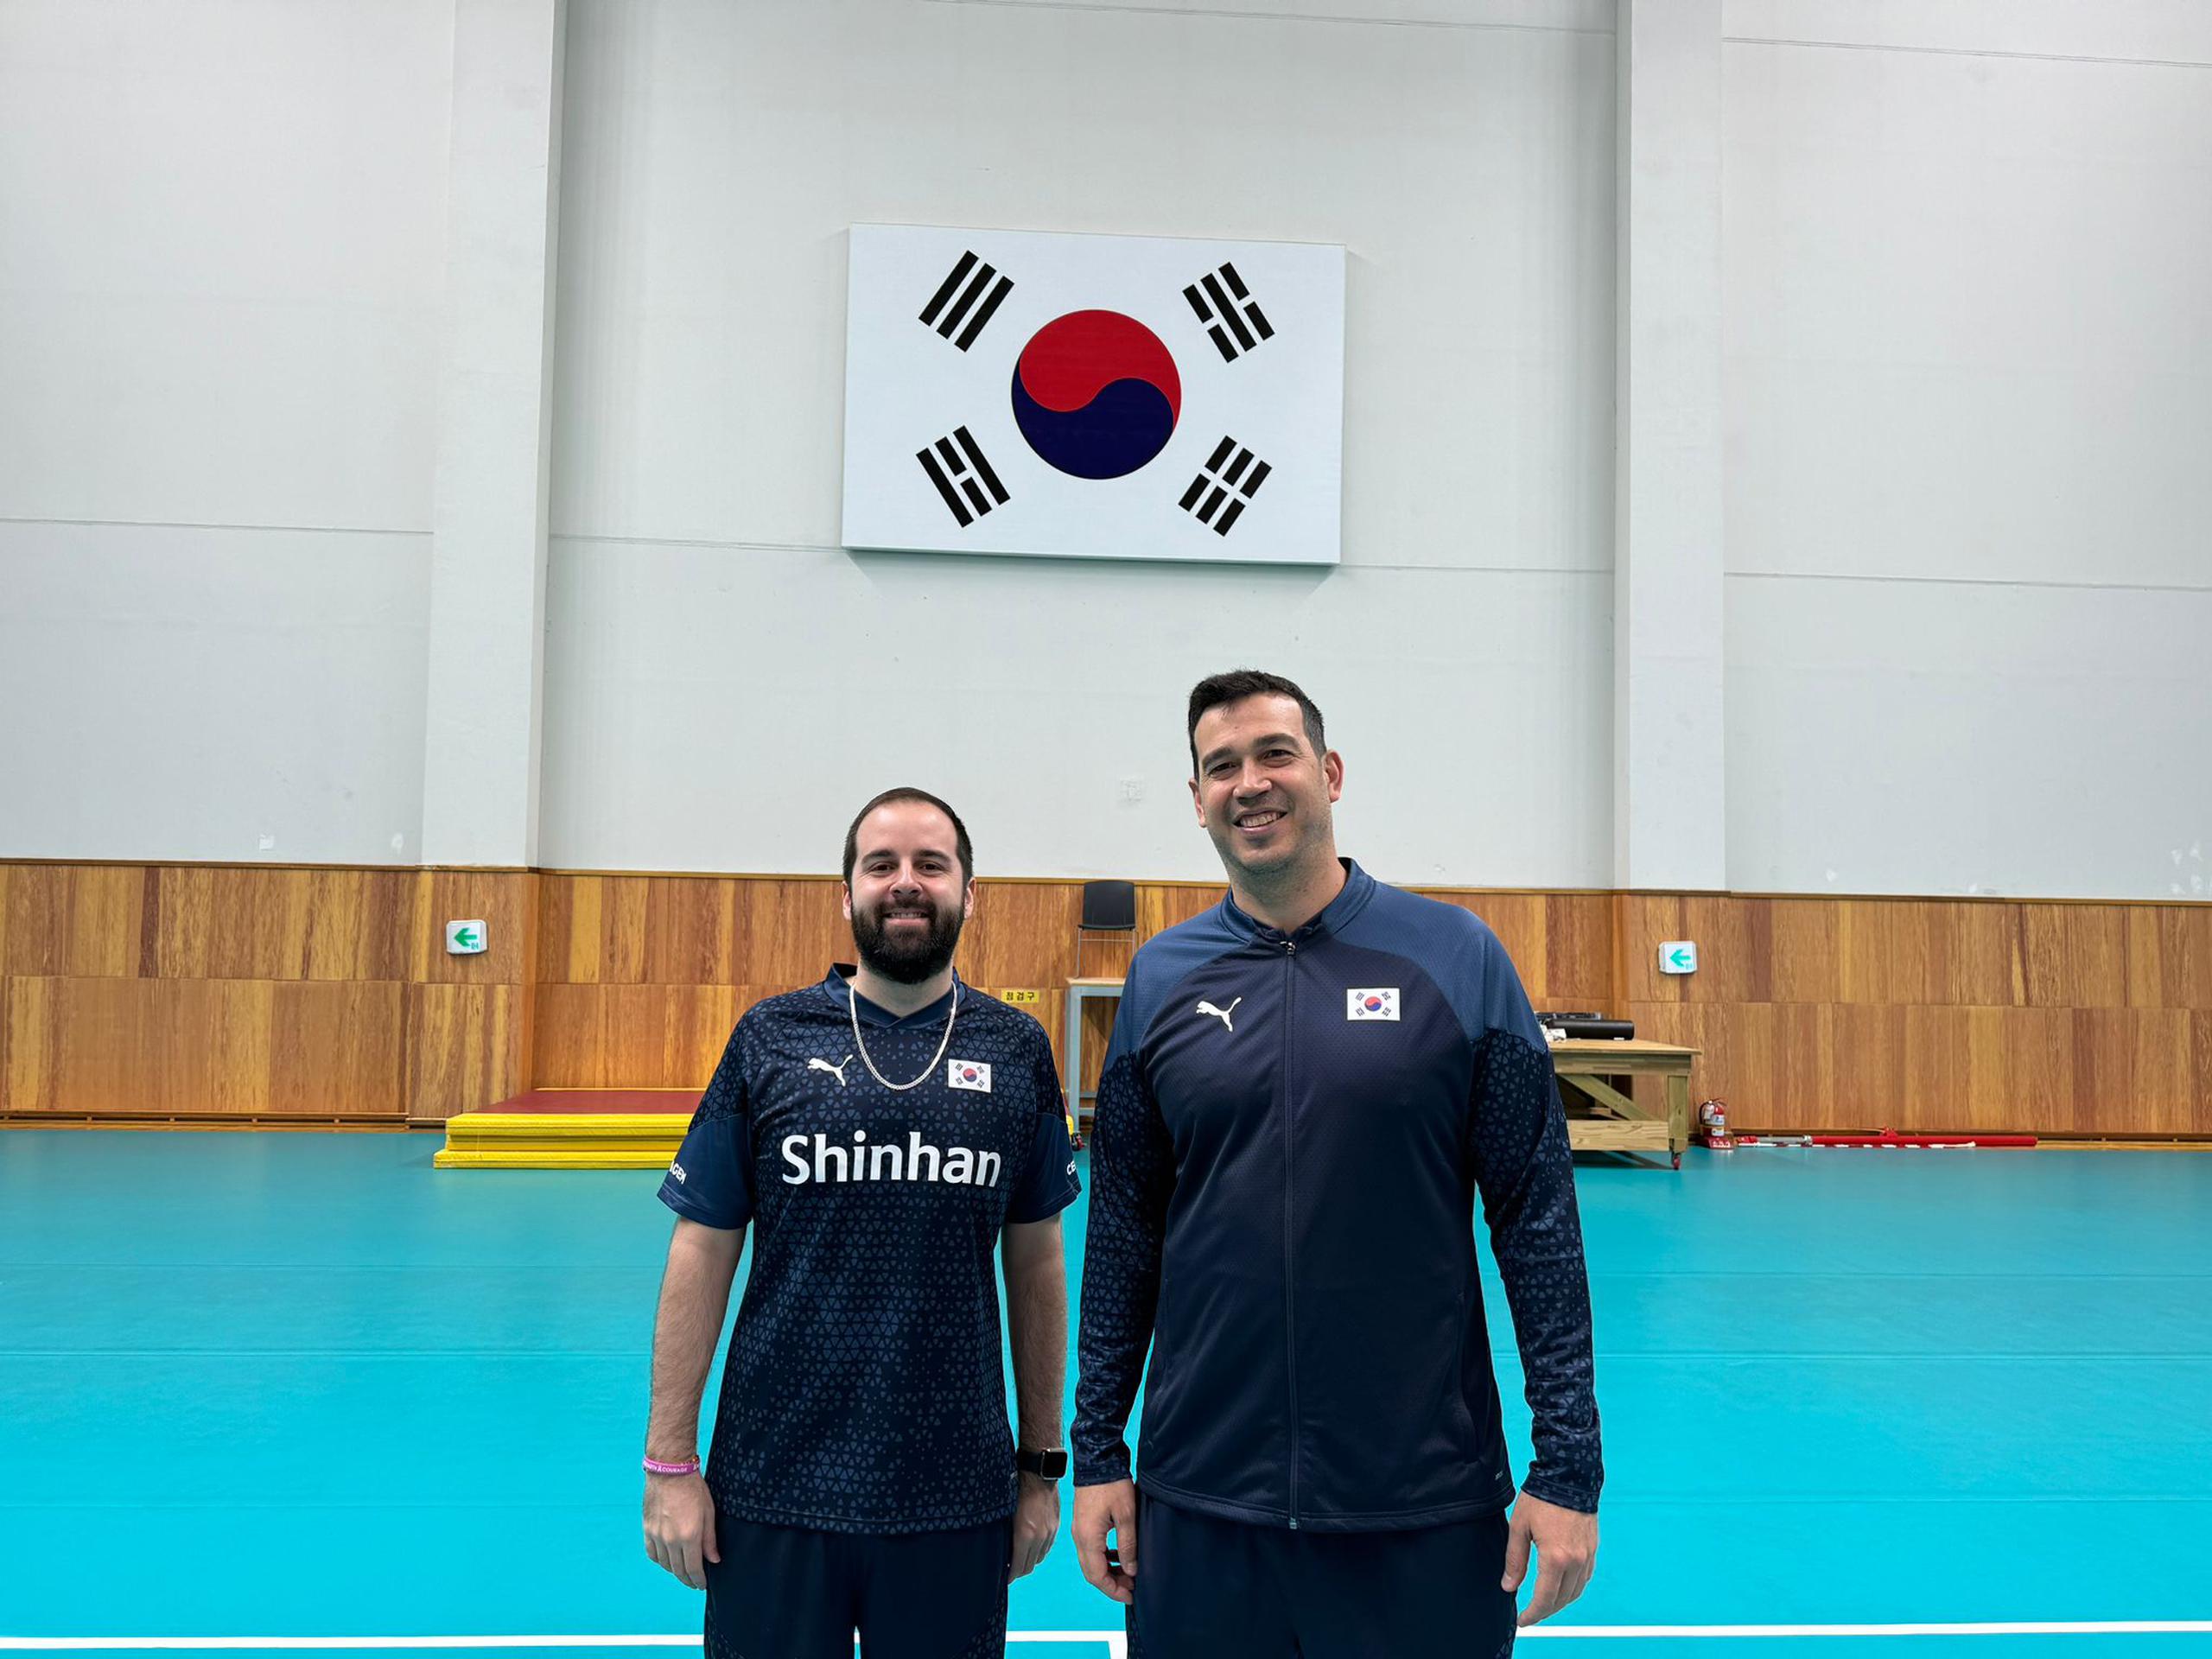 Fernando Morales y Jesús Echevarría a la derecha e izquierda, respetivamente, posan en la cancha de entrenamientos en Corea del Sur con la bandera de Corea del Sur al fondo.